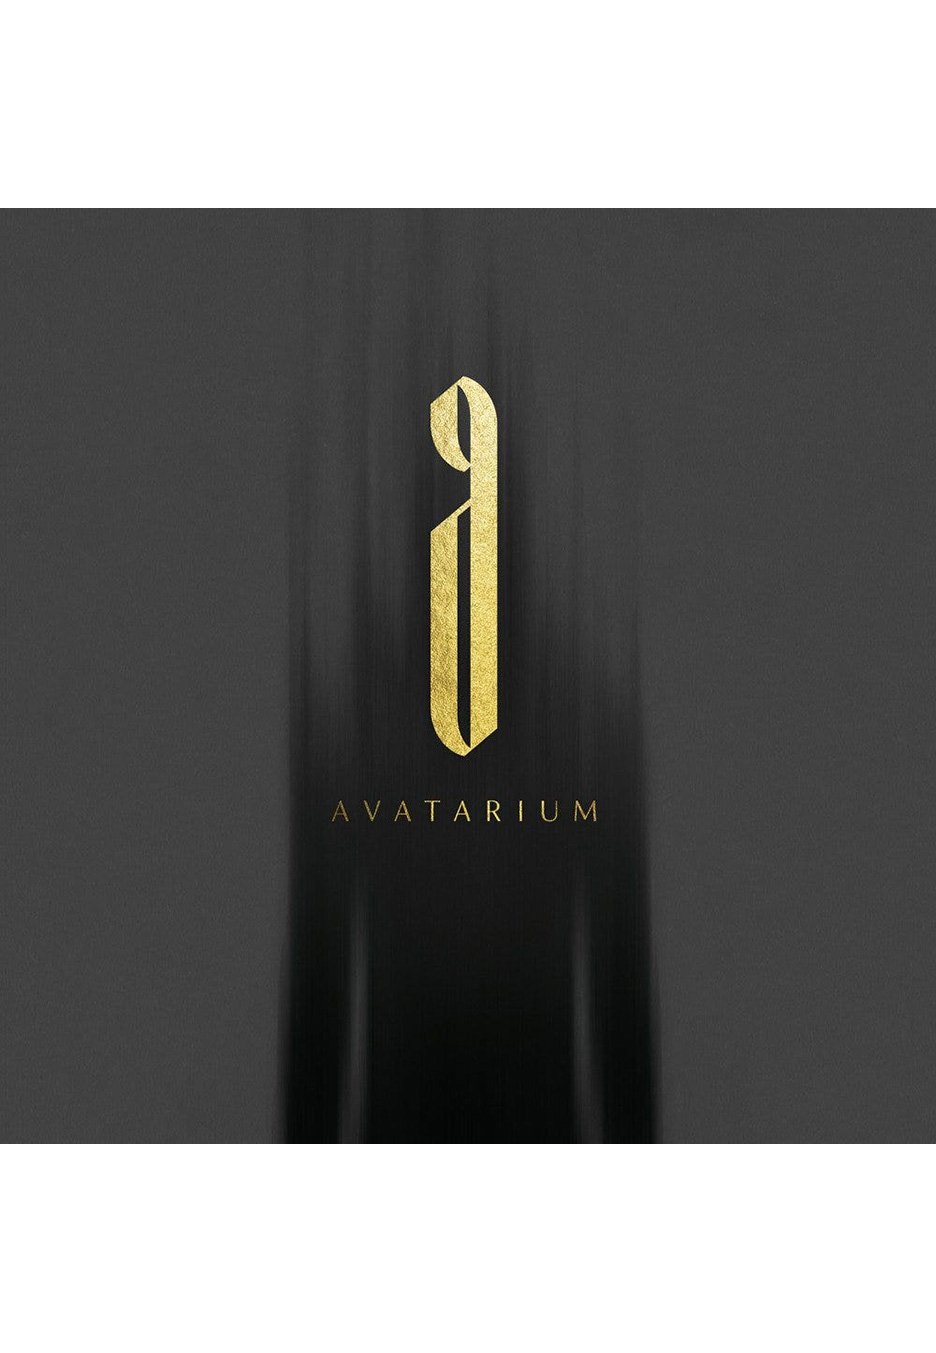 Avatarium - The Fire I Long For - Vinyl